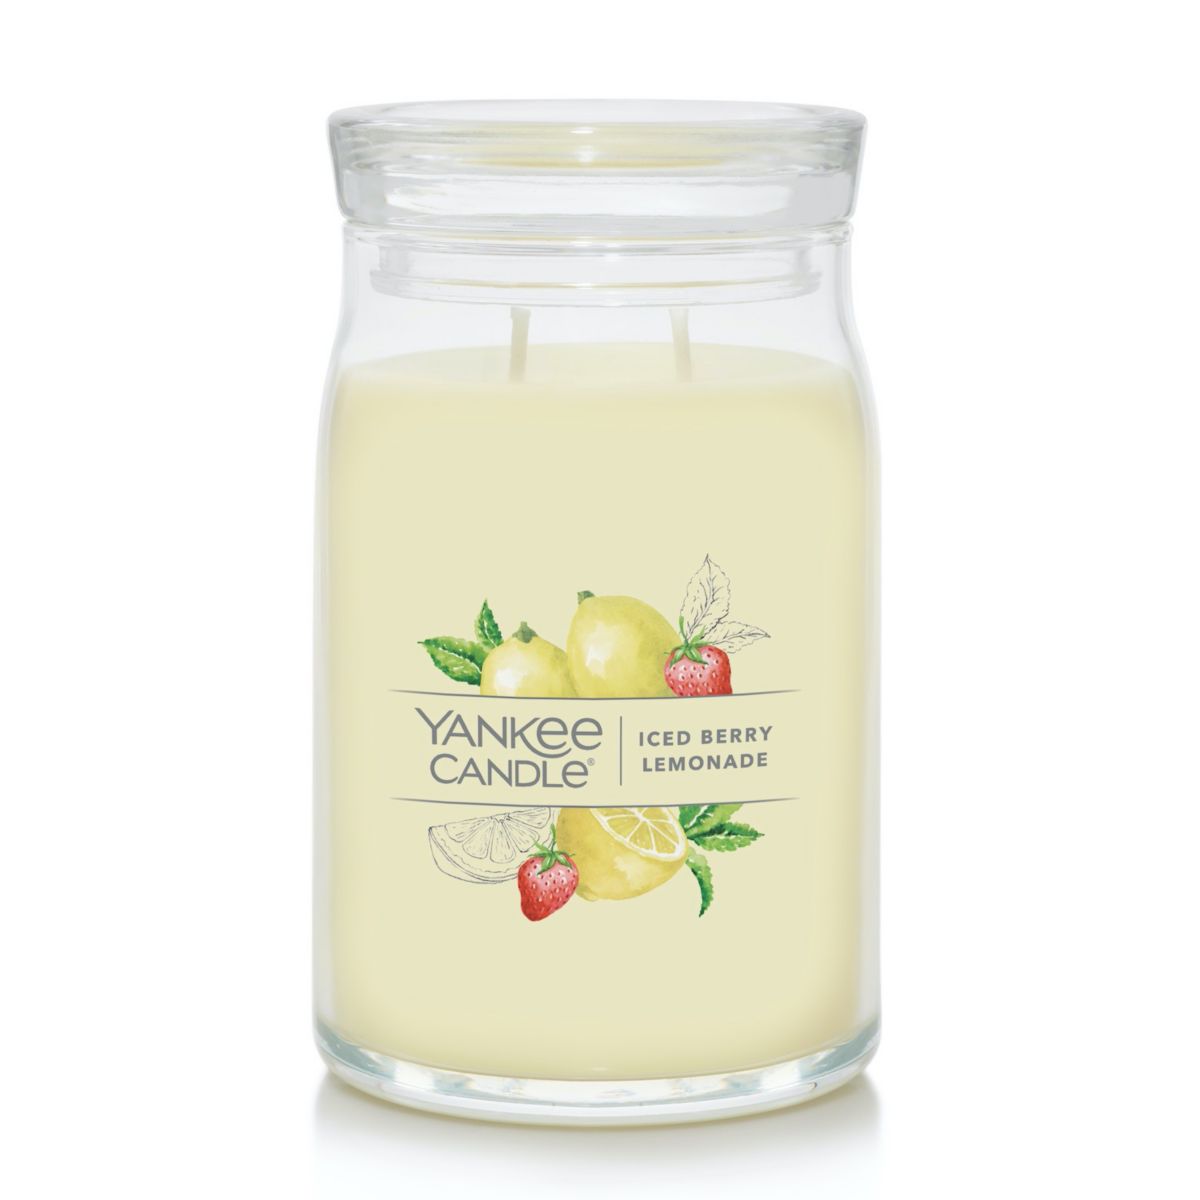 Свеча Yankee Candle с ягодами и лимонадом, фирменная свеча в большой банке Yankee Candle